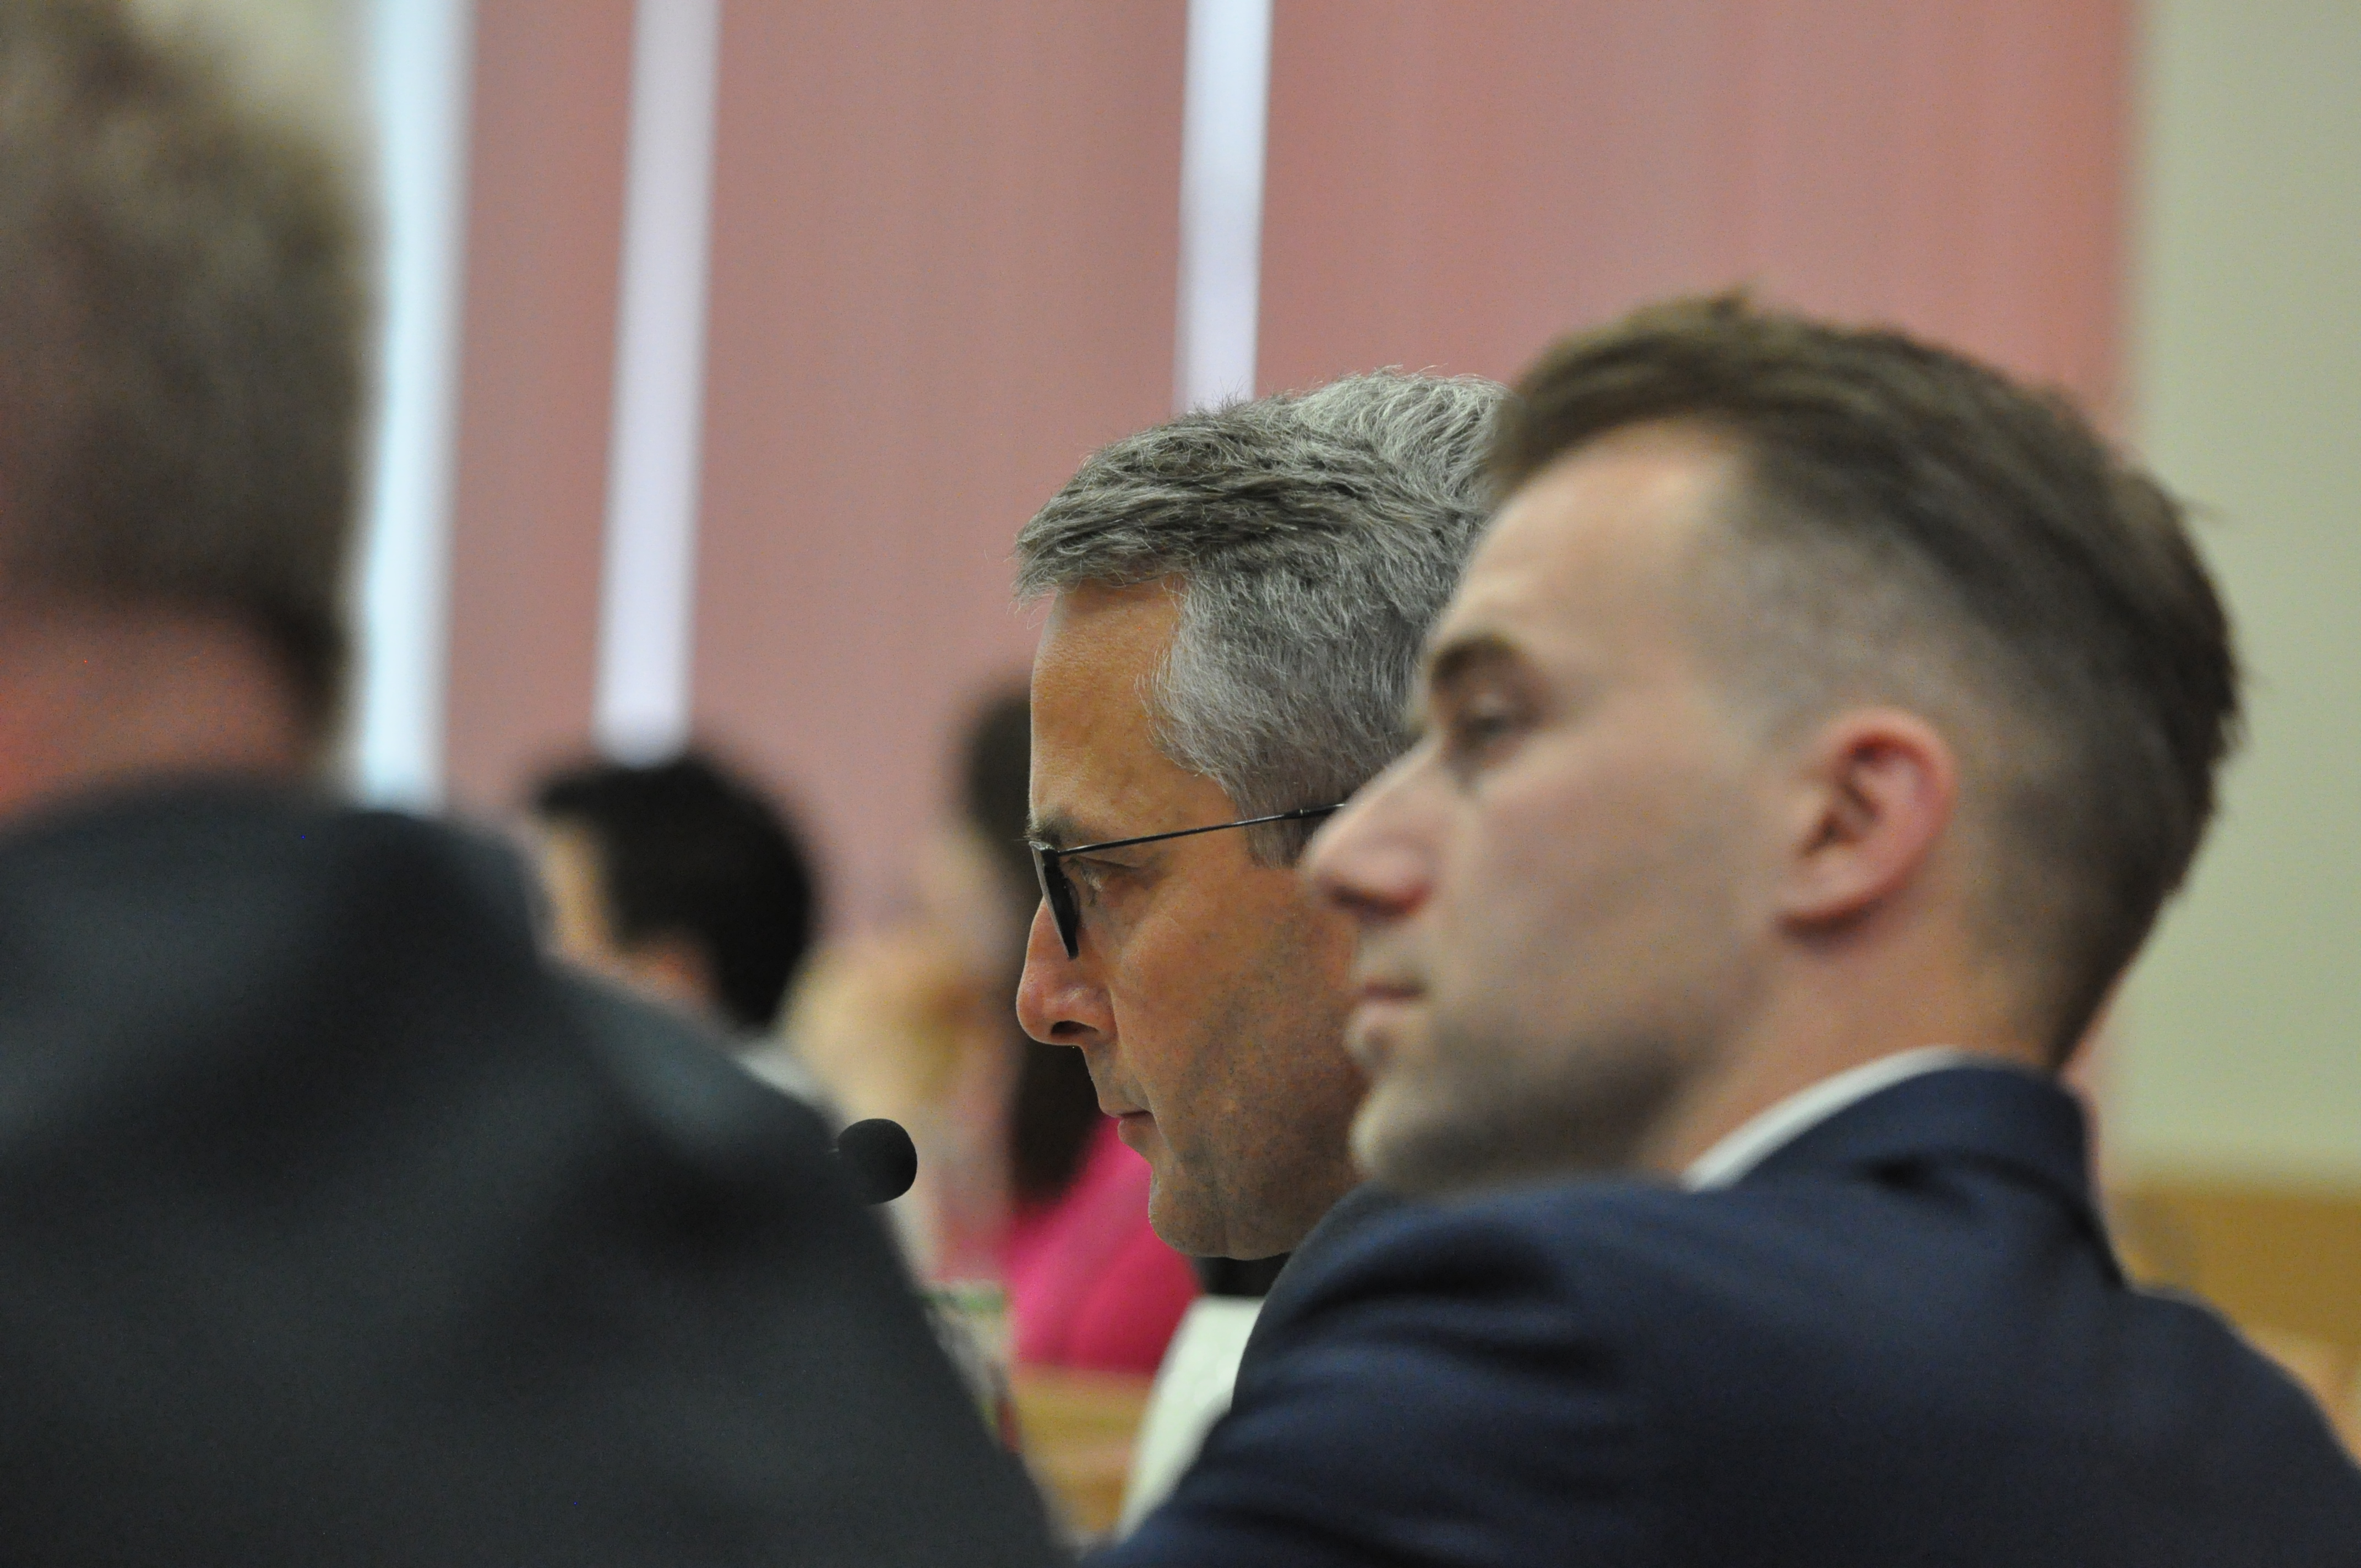 Na sesji tylko prezes Unii - Kamil Paruzel siedział obok prezydenta Polowego. Poozstali szefowie spółek miejskich zajęli miejsca z tyłu sali obrad